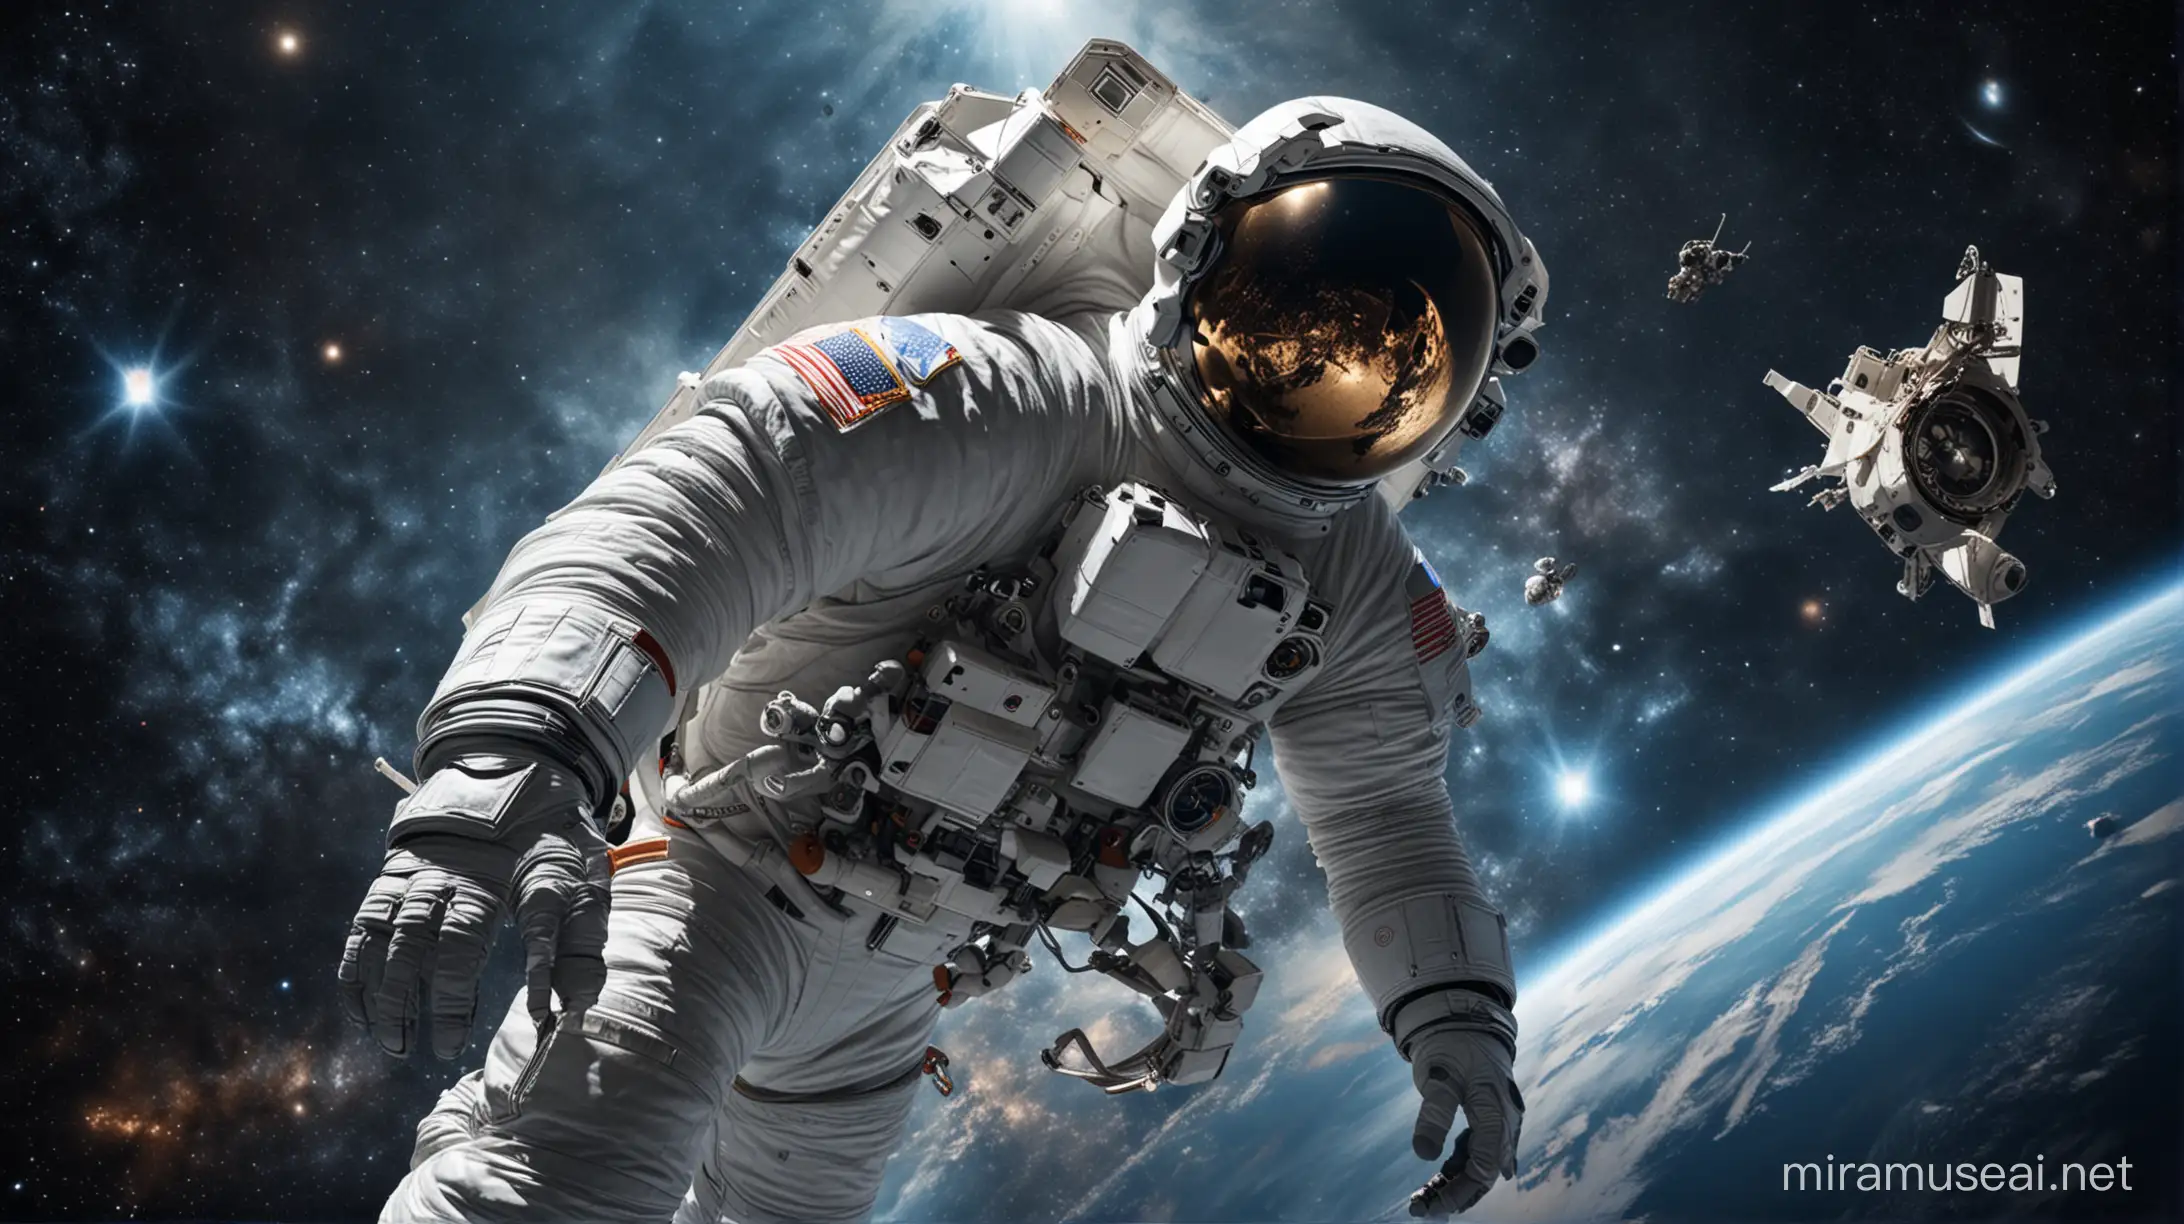 космонавт в скафандре в открытом космосе на фоне вселенной и космического корабля.
